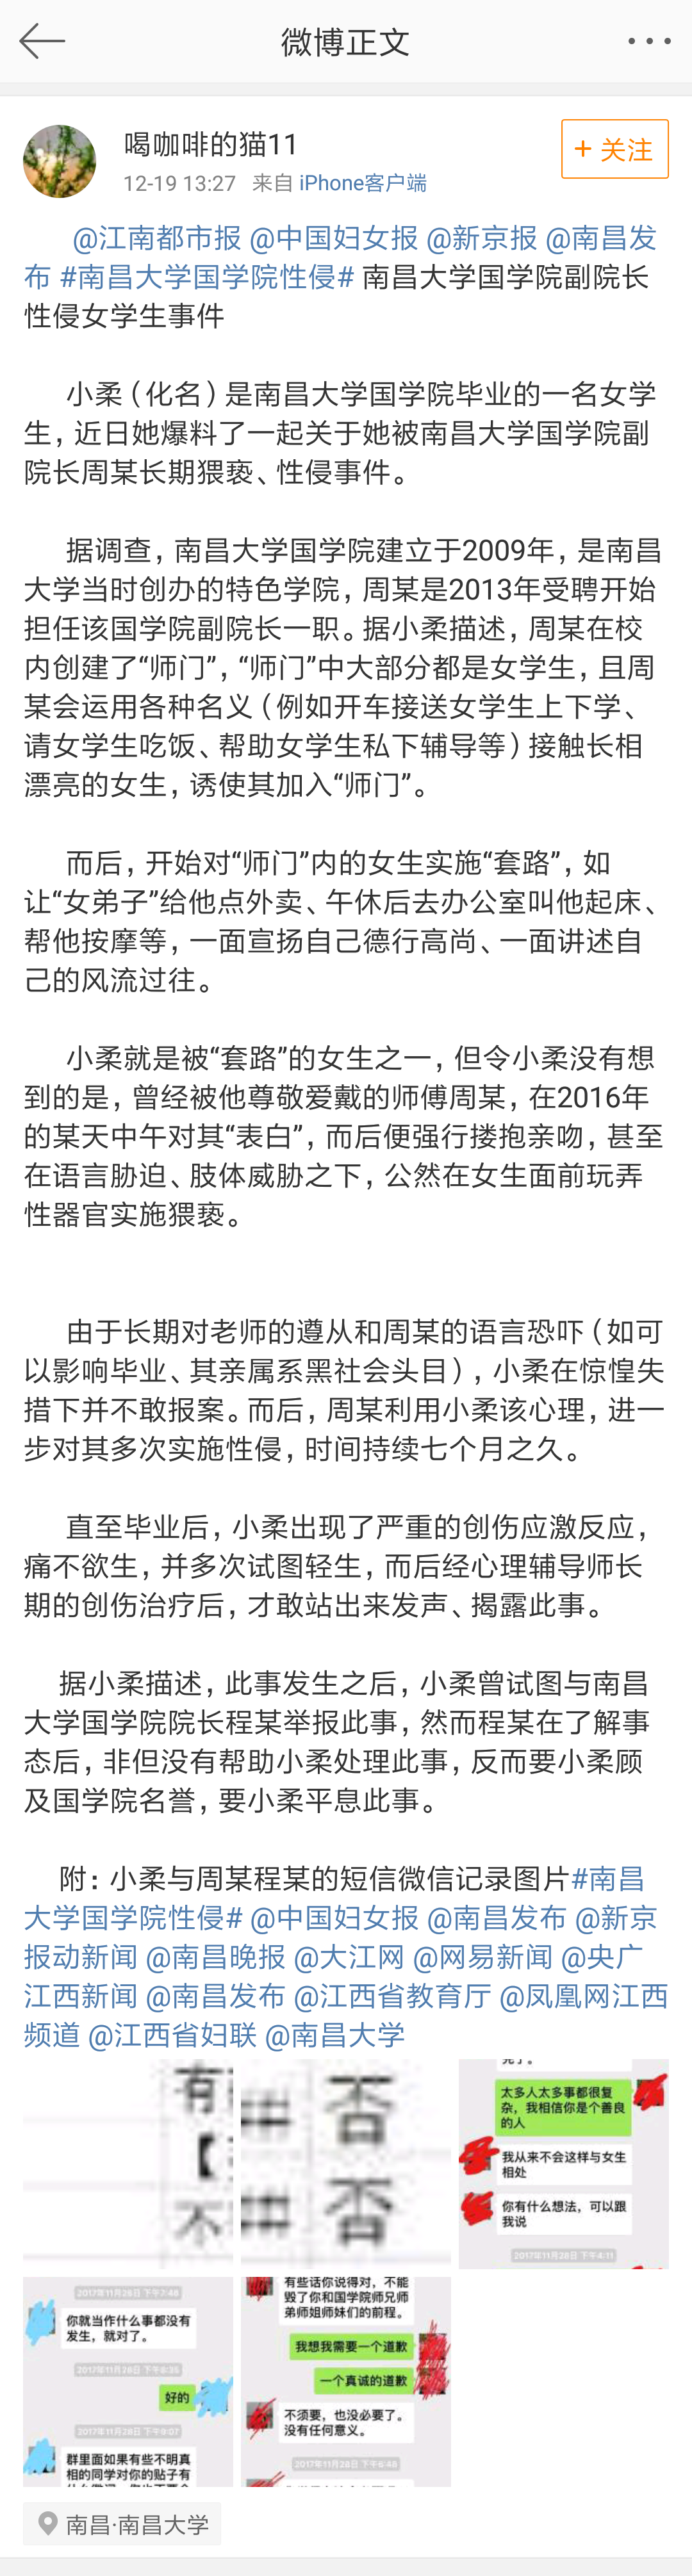 南昌大学国学院副院长被曝性侵女学生 当事人回应